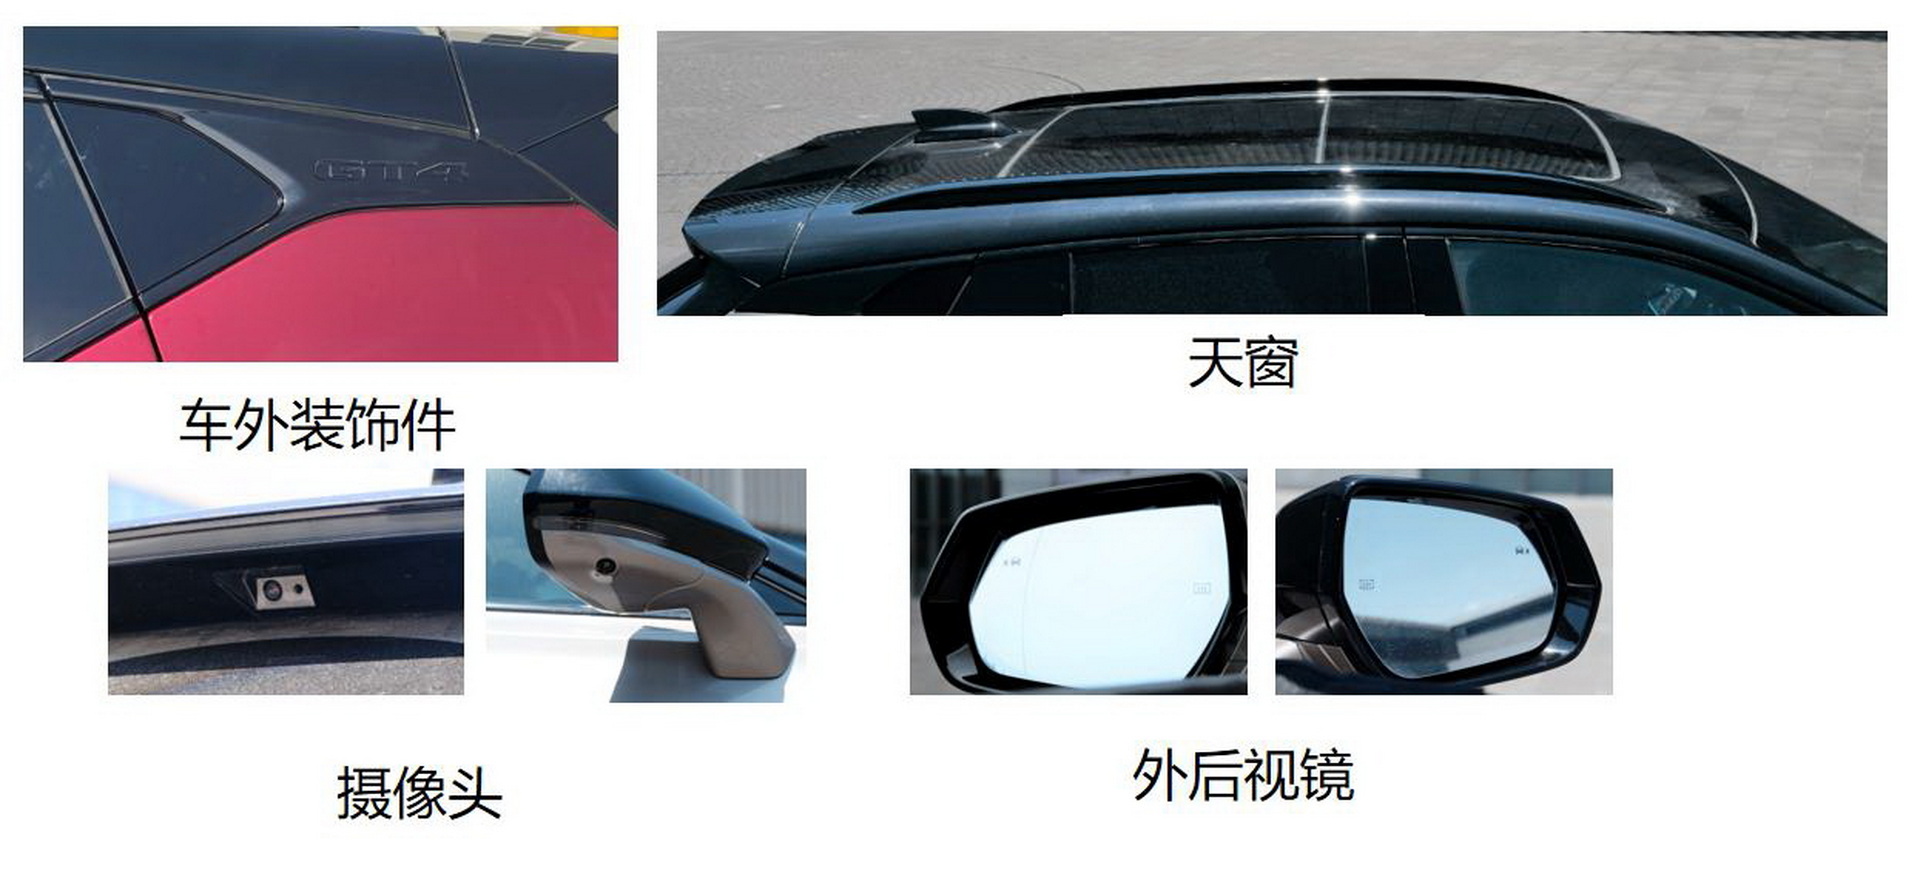 تسريب كاديلاك GT4 الجديدة في الصين – كروس أوفر بقوة 230 حصان 3